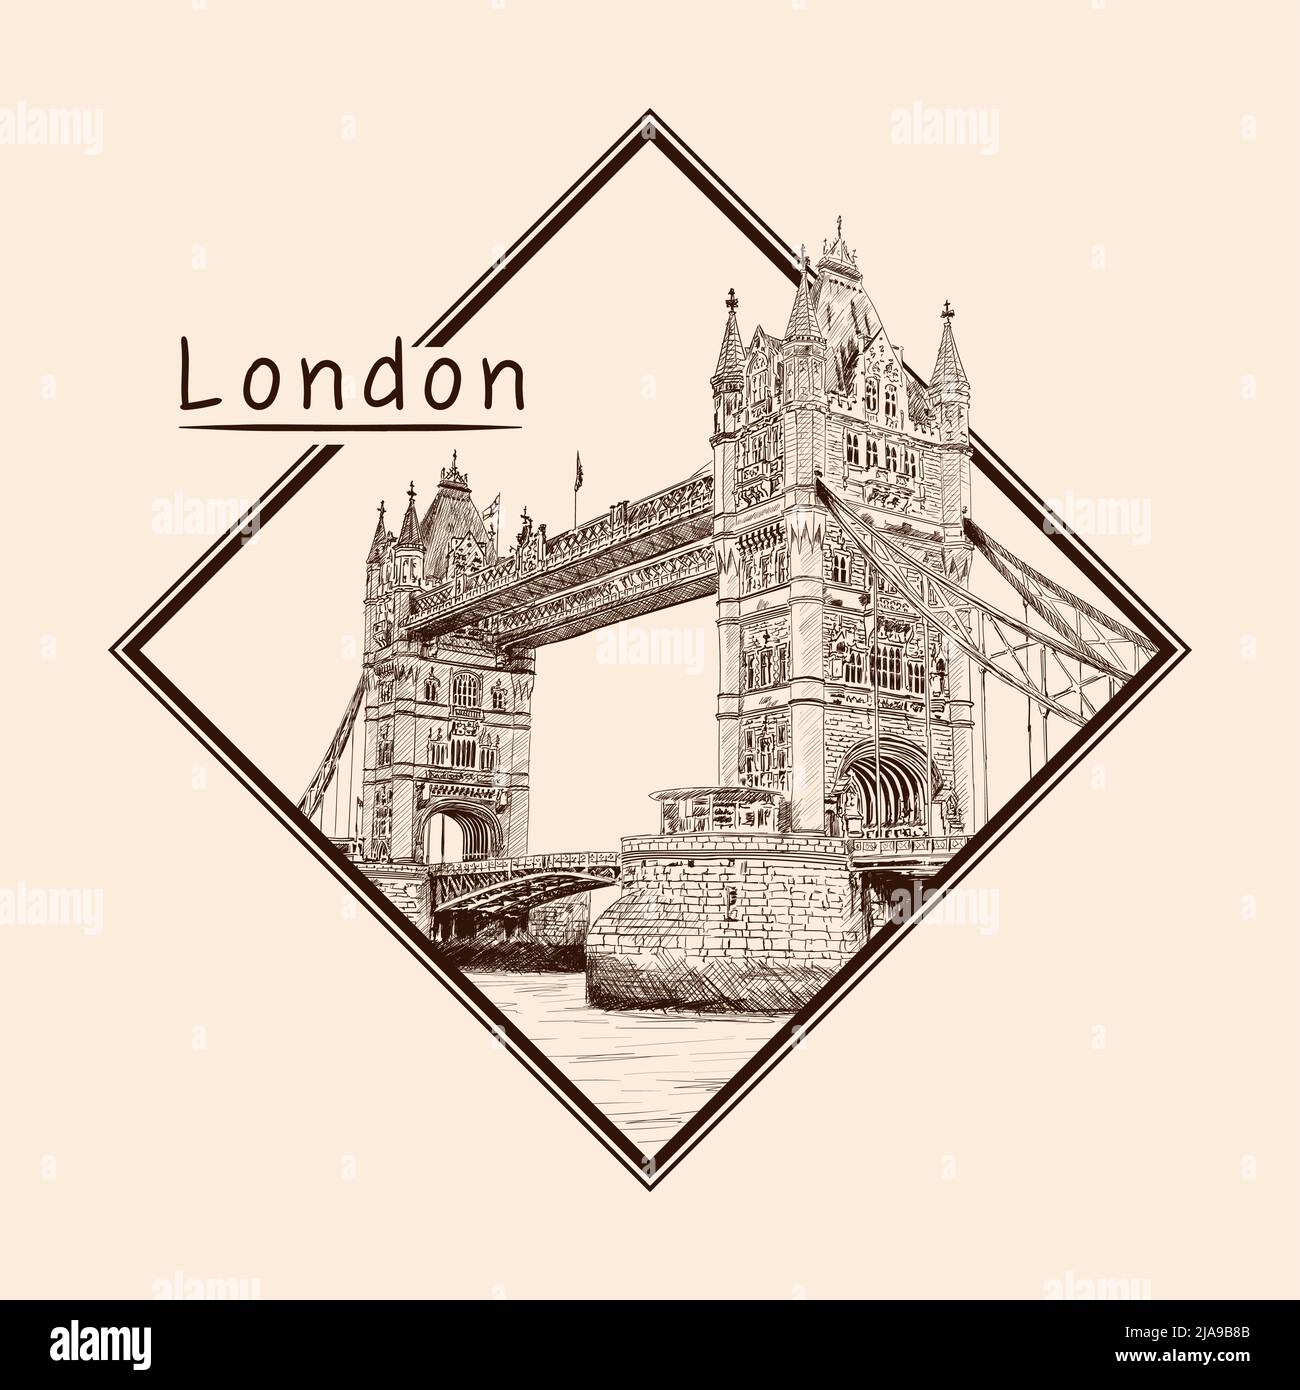 Tower Bridge à Londres, face à la Tamise. Dessinez au crayon sur un arrière-plan beige. Emblème dans un cadre rectangulaire et une inscription. Illustration de Vecteur